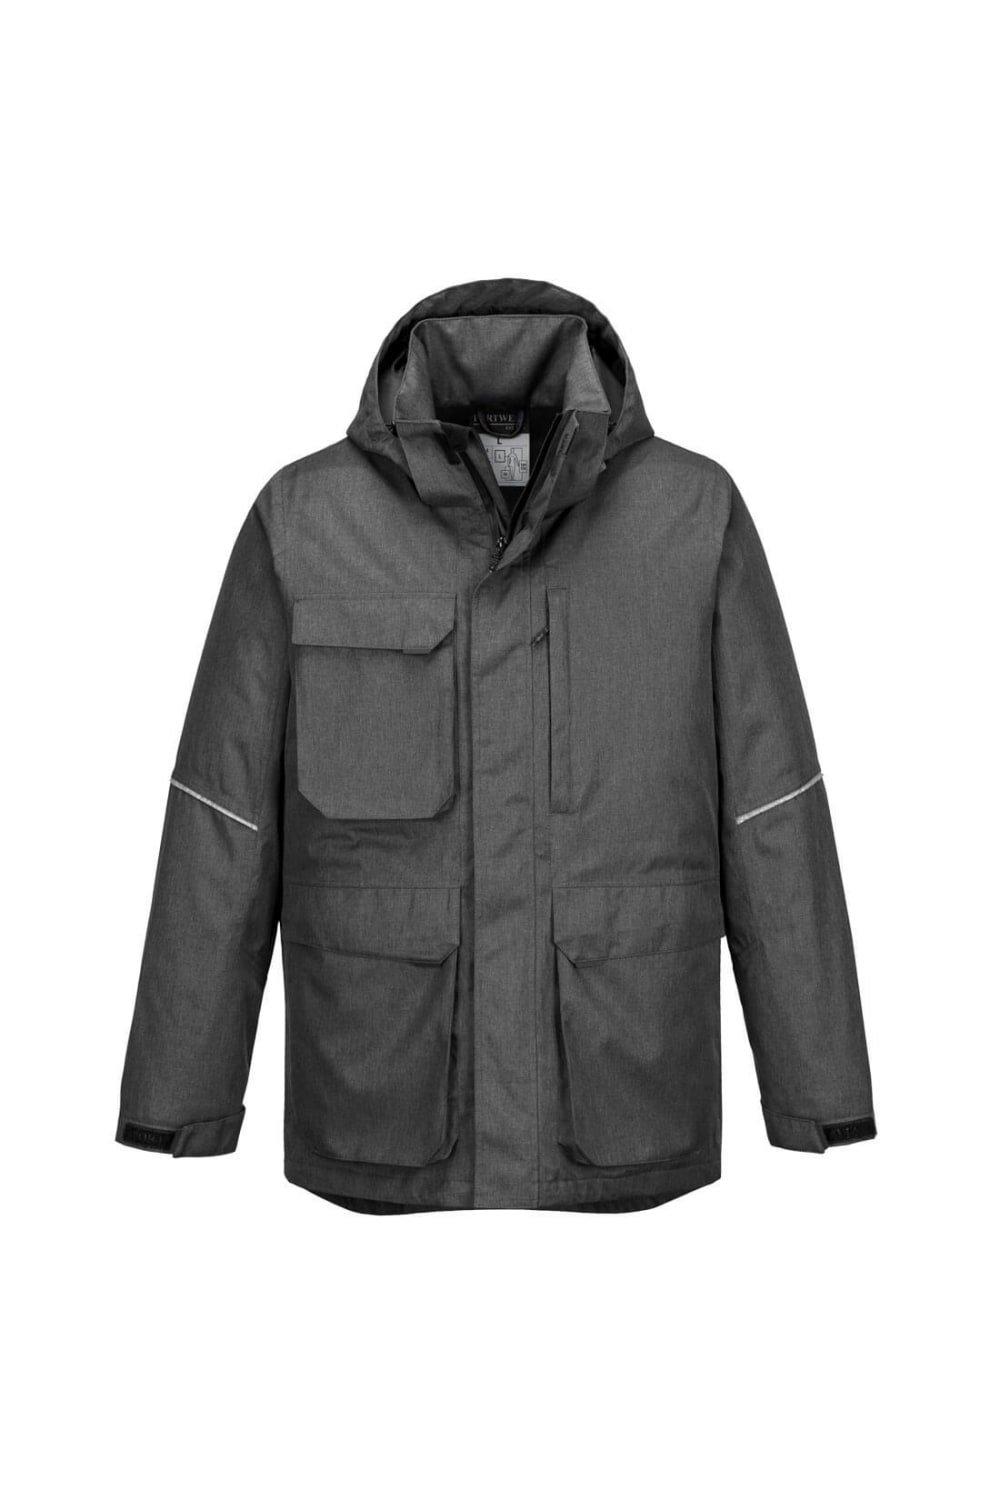 Куртка KX3 Portwest, серый